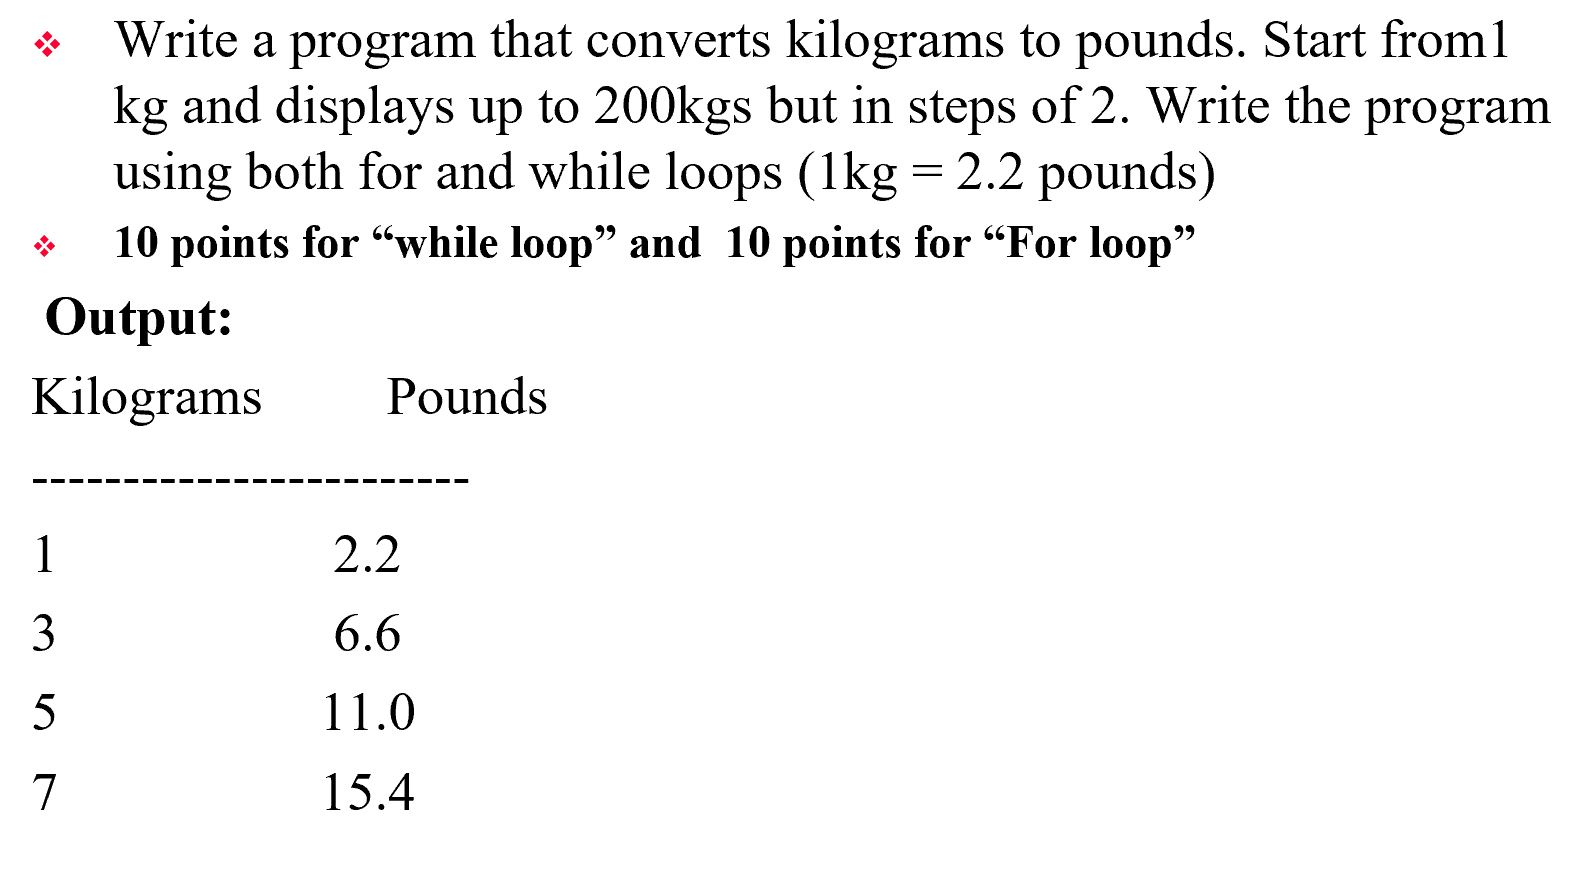 Write a program that converts kilograms to pounds. 